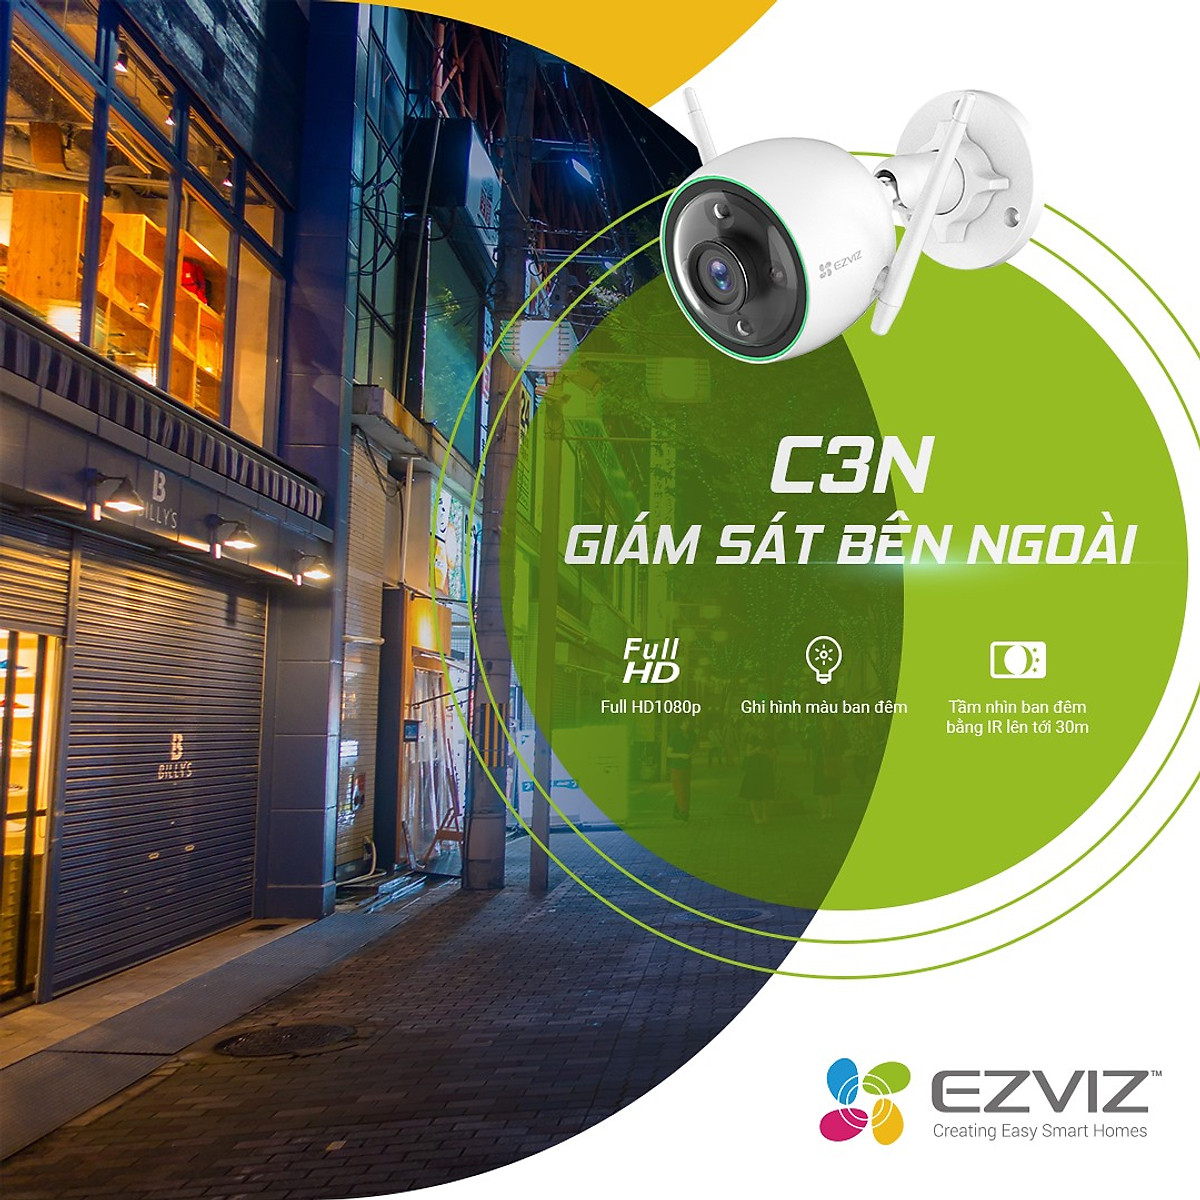 Camera Wifi EZVIZ CS-C3N 2MP FullHD, Có Màu Ban Đêm, Lắp Ngoài Trời - Hàng Chính Hãng